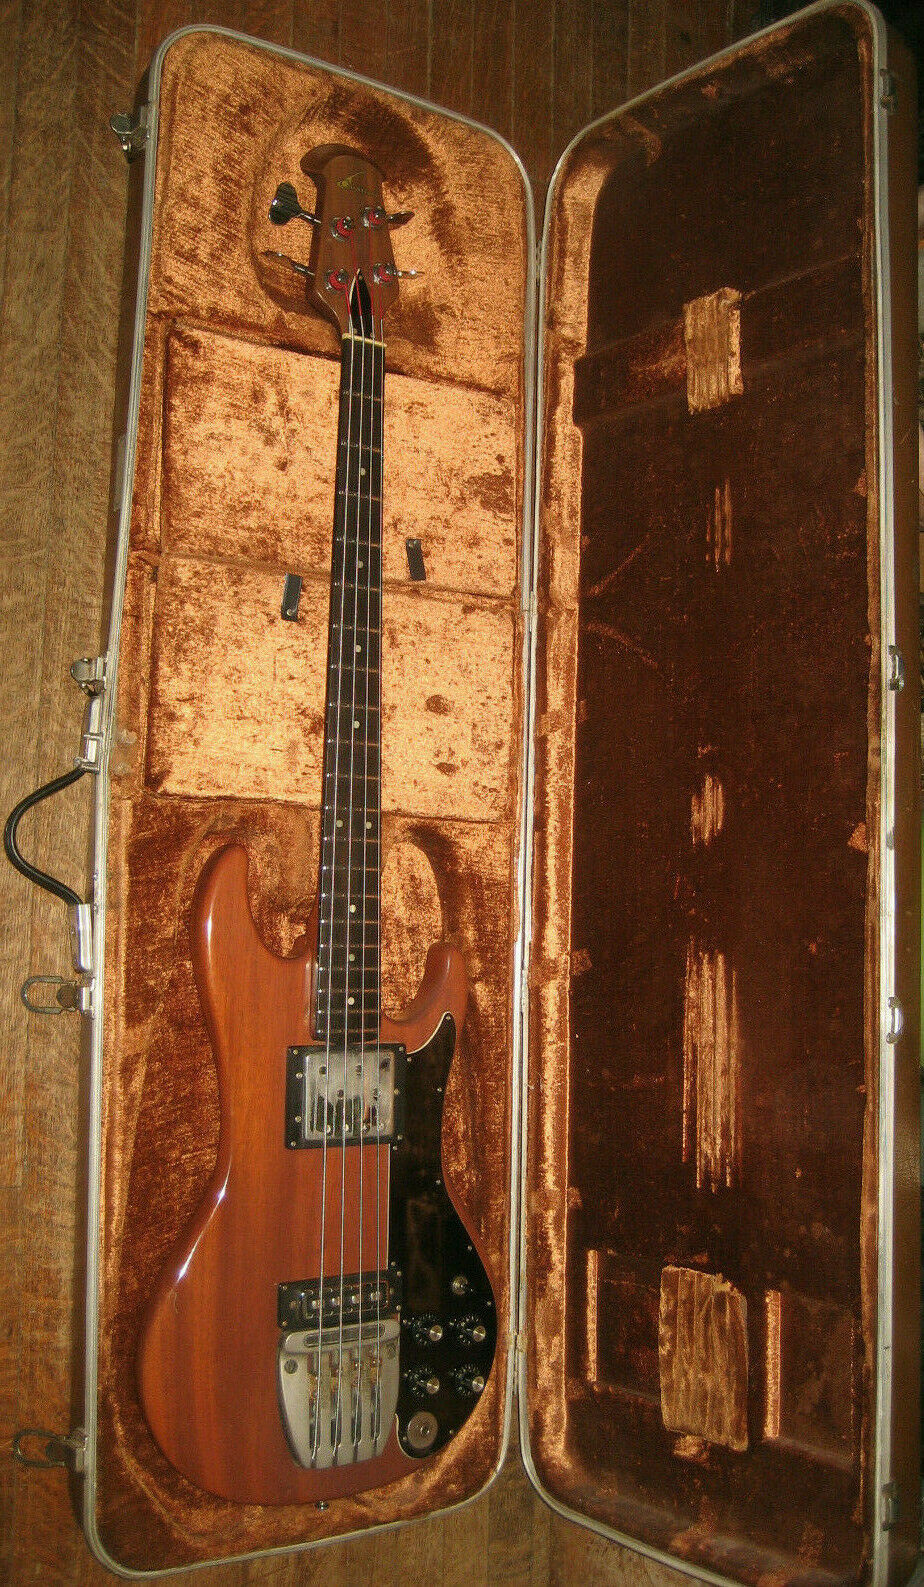 Ovation Magnum Iii (3) Pro Serviced Bass Guitar, Original Case, Shop Receipt